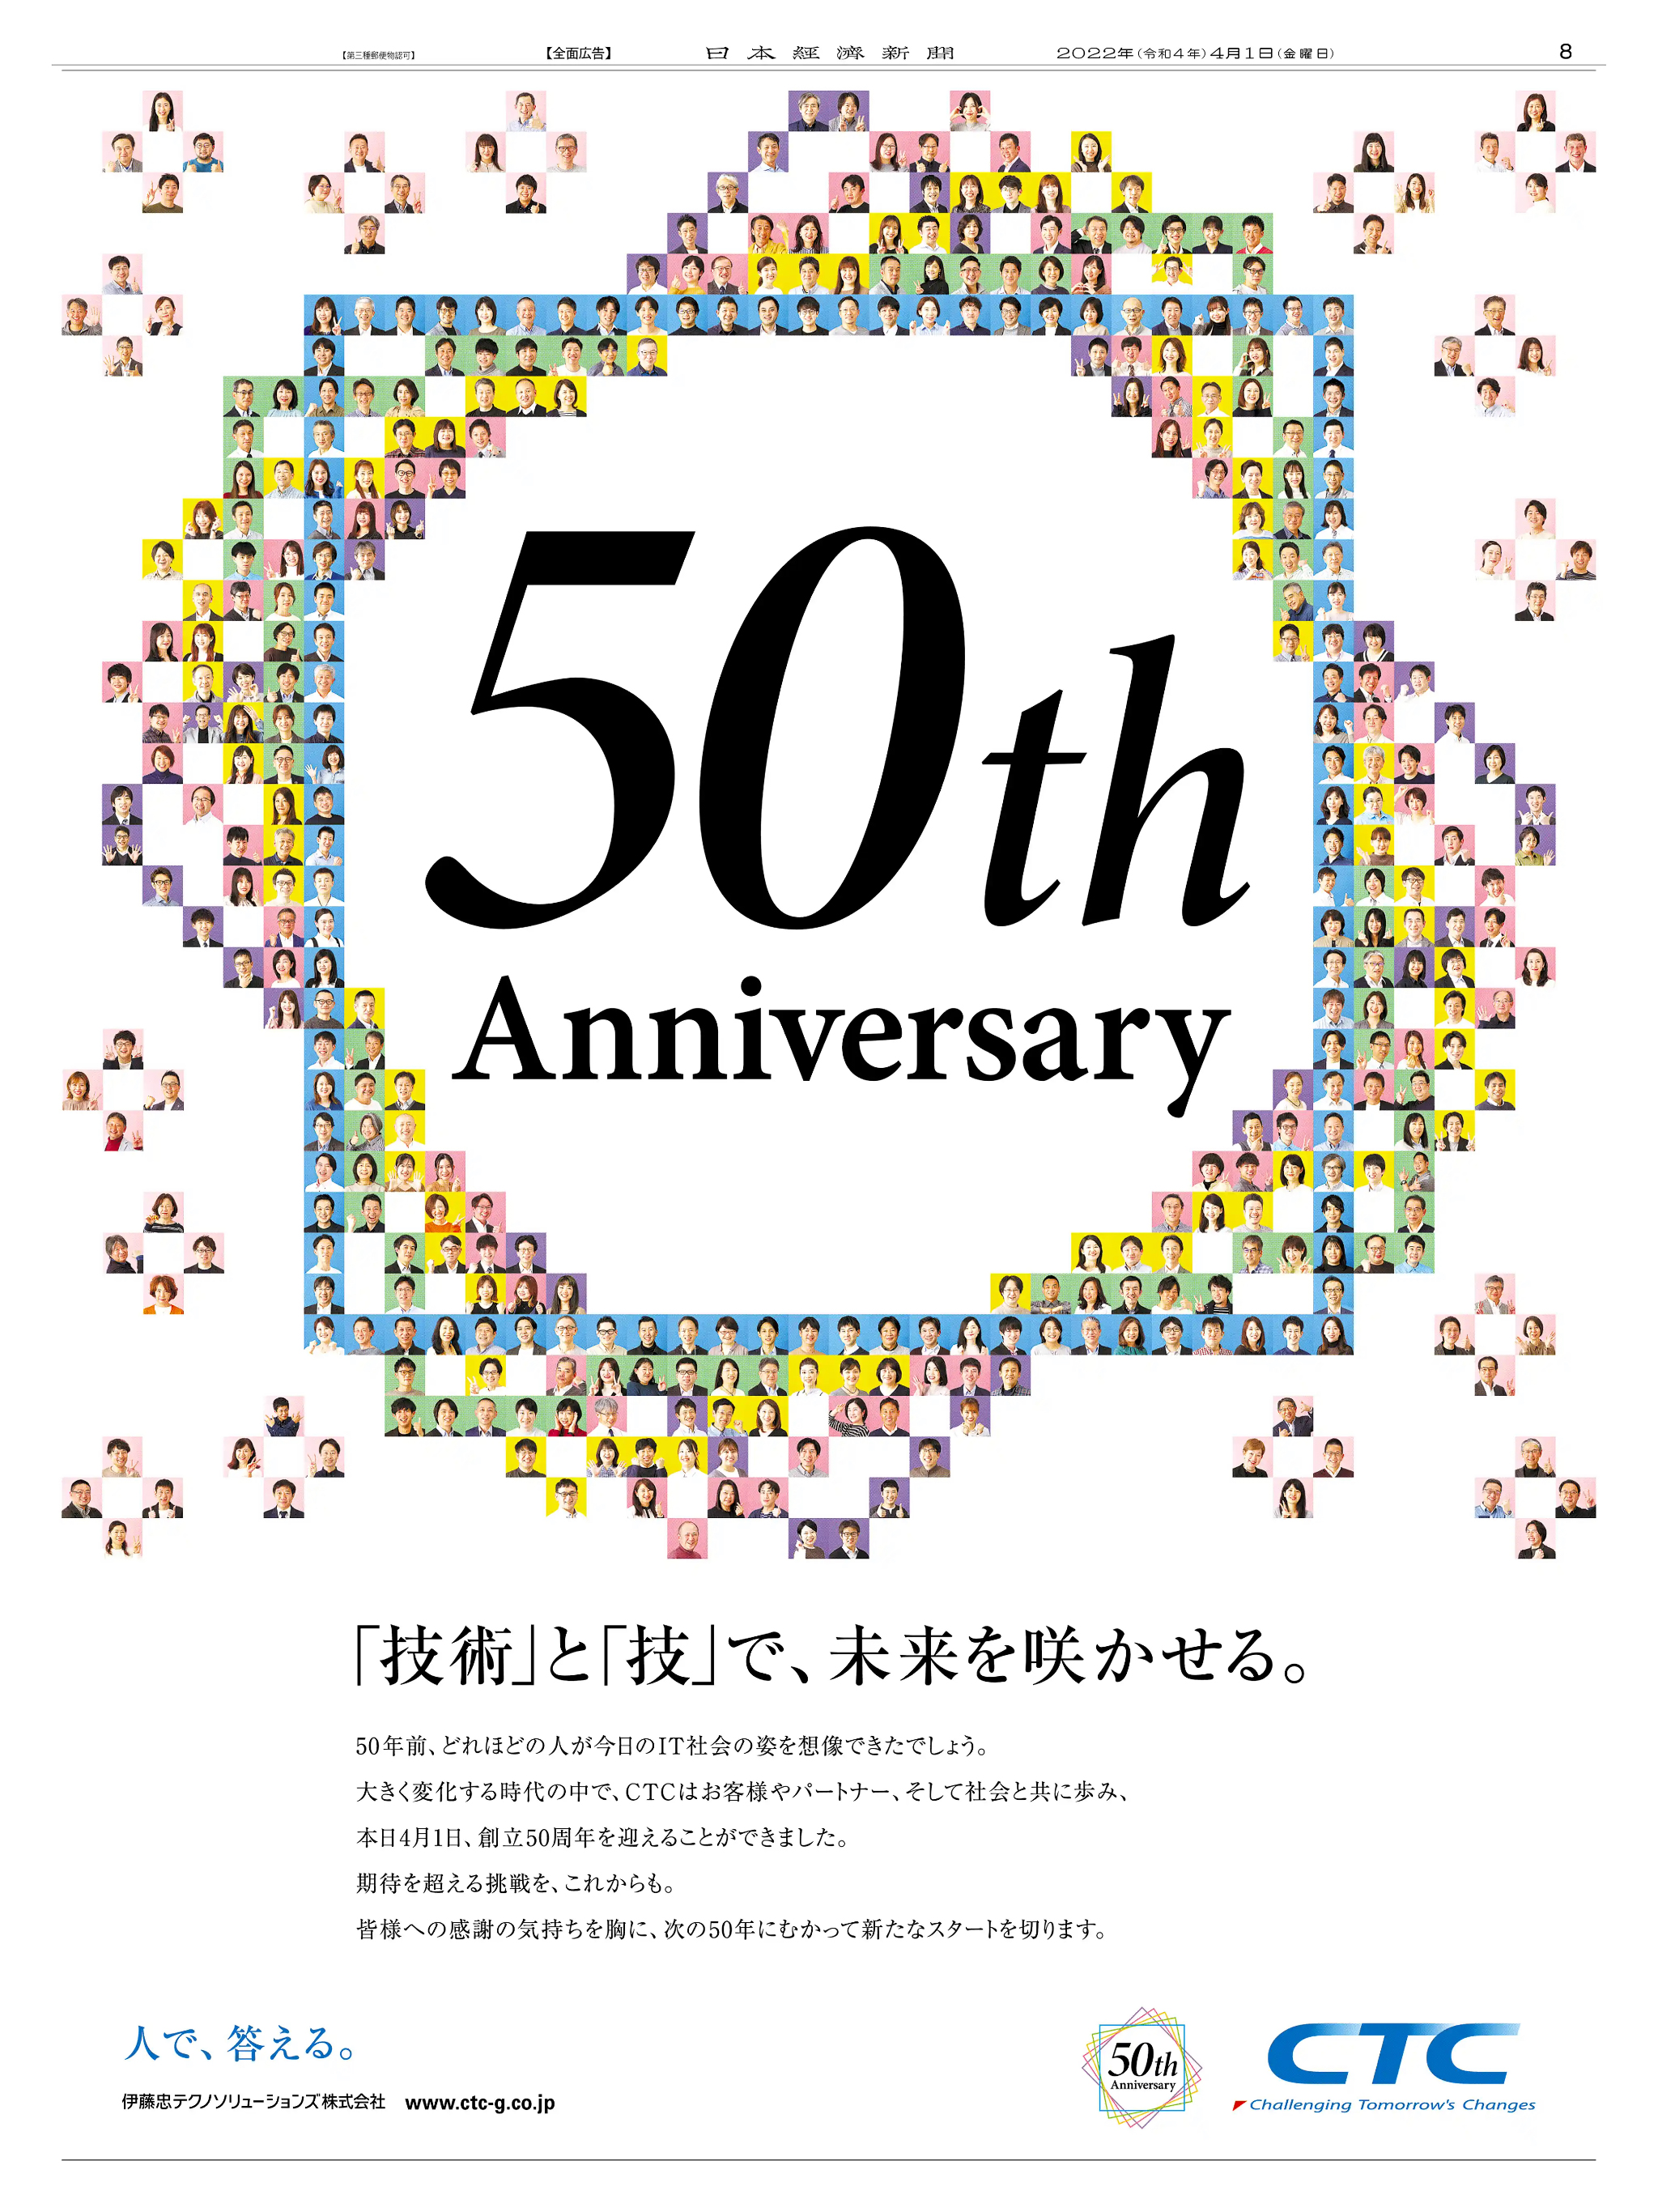 周年記念広告事例 「伊藤忠テクノソリューションズ 創立50周年」